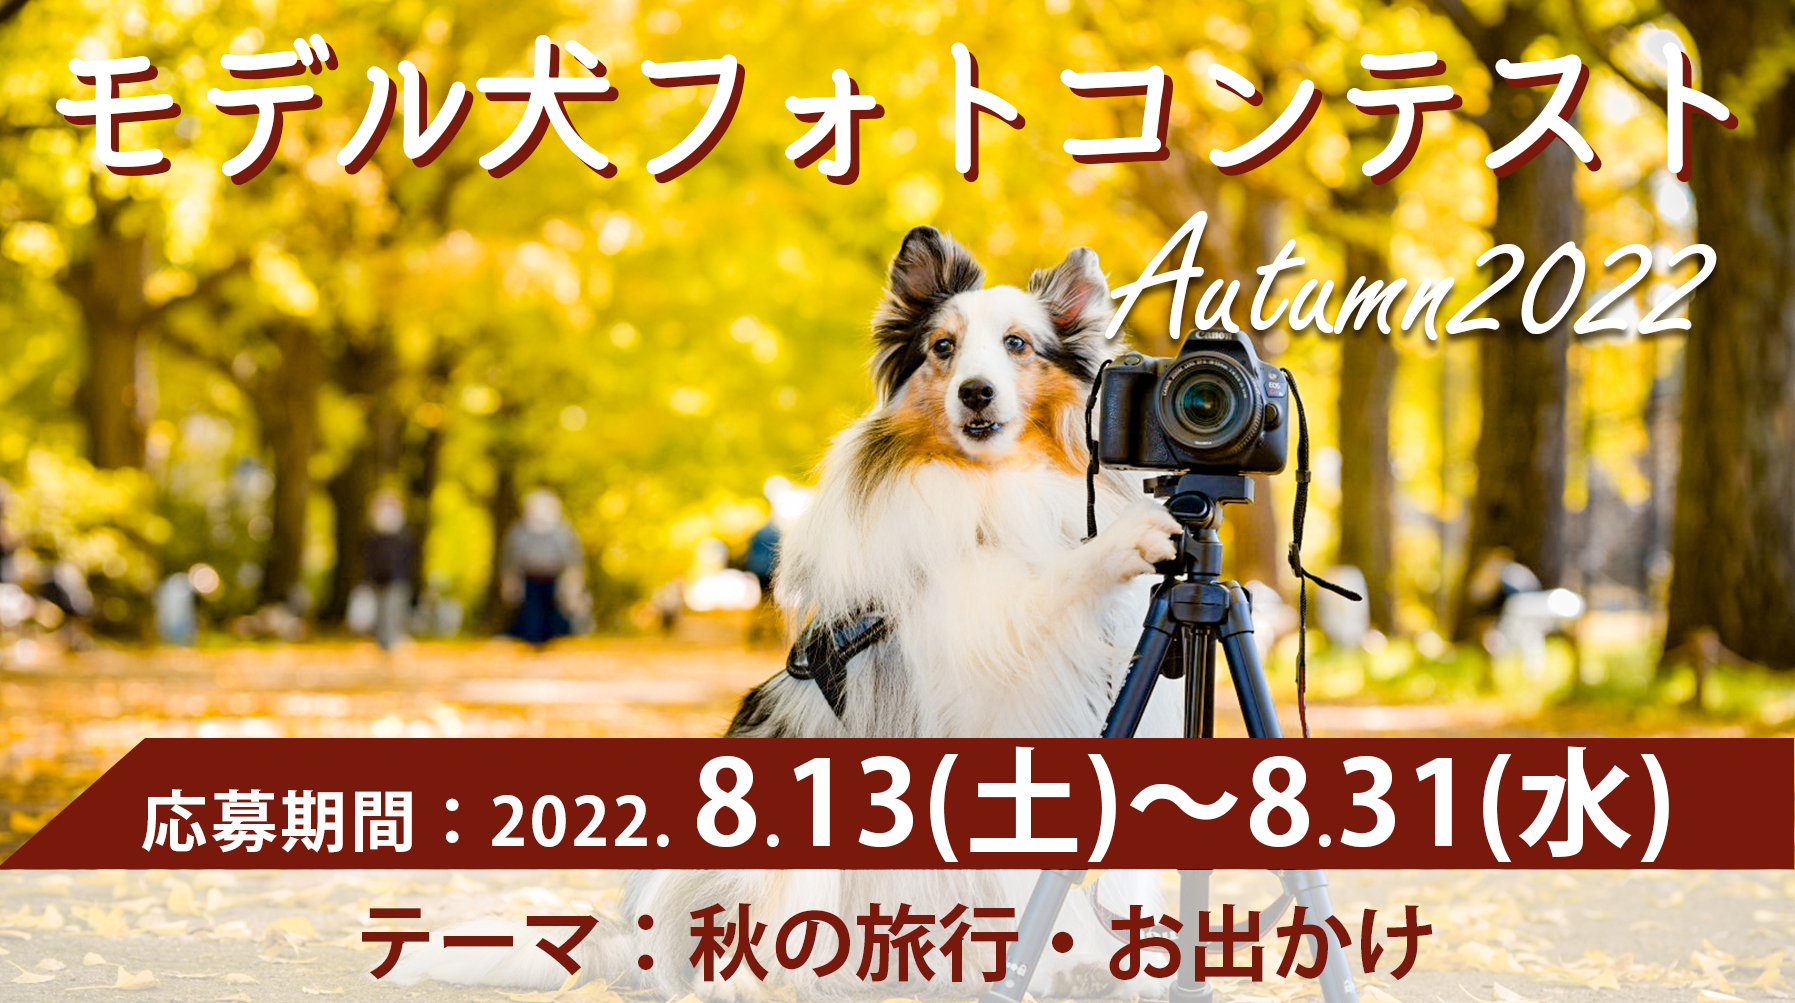 イヌトミィ モデル犬フォトコンテスト Autumn 2022